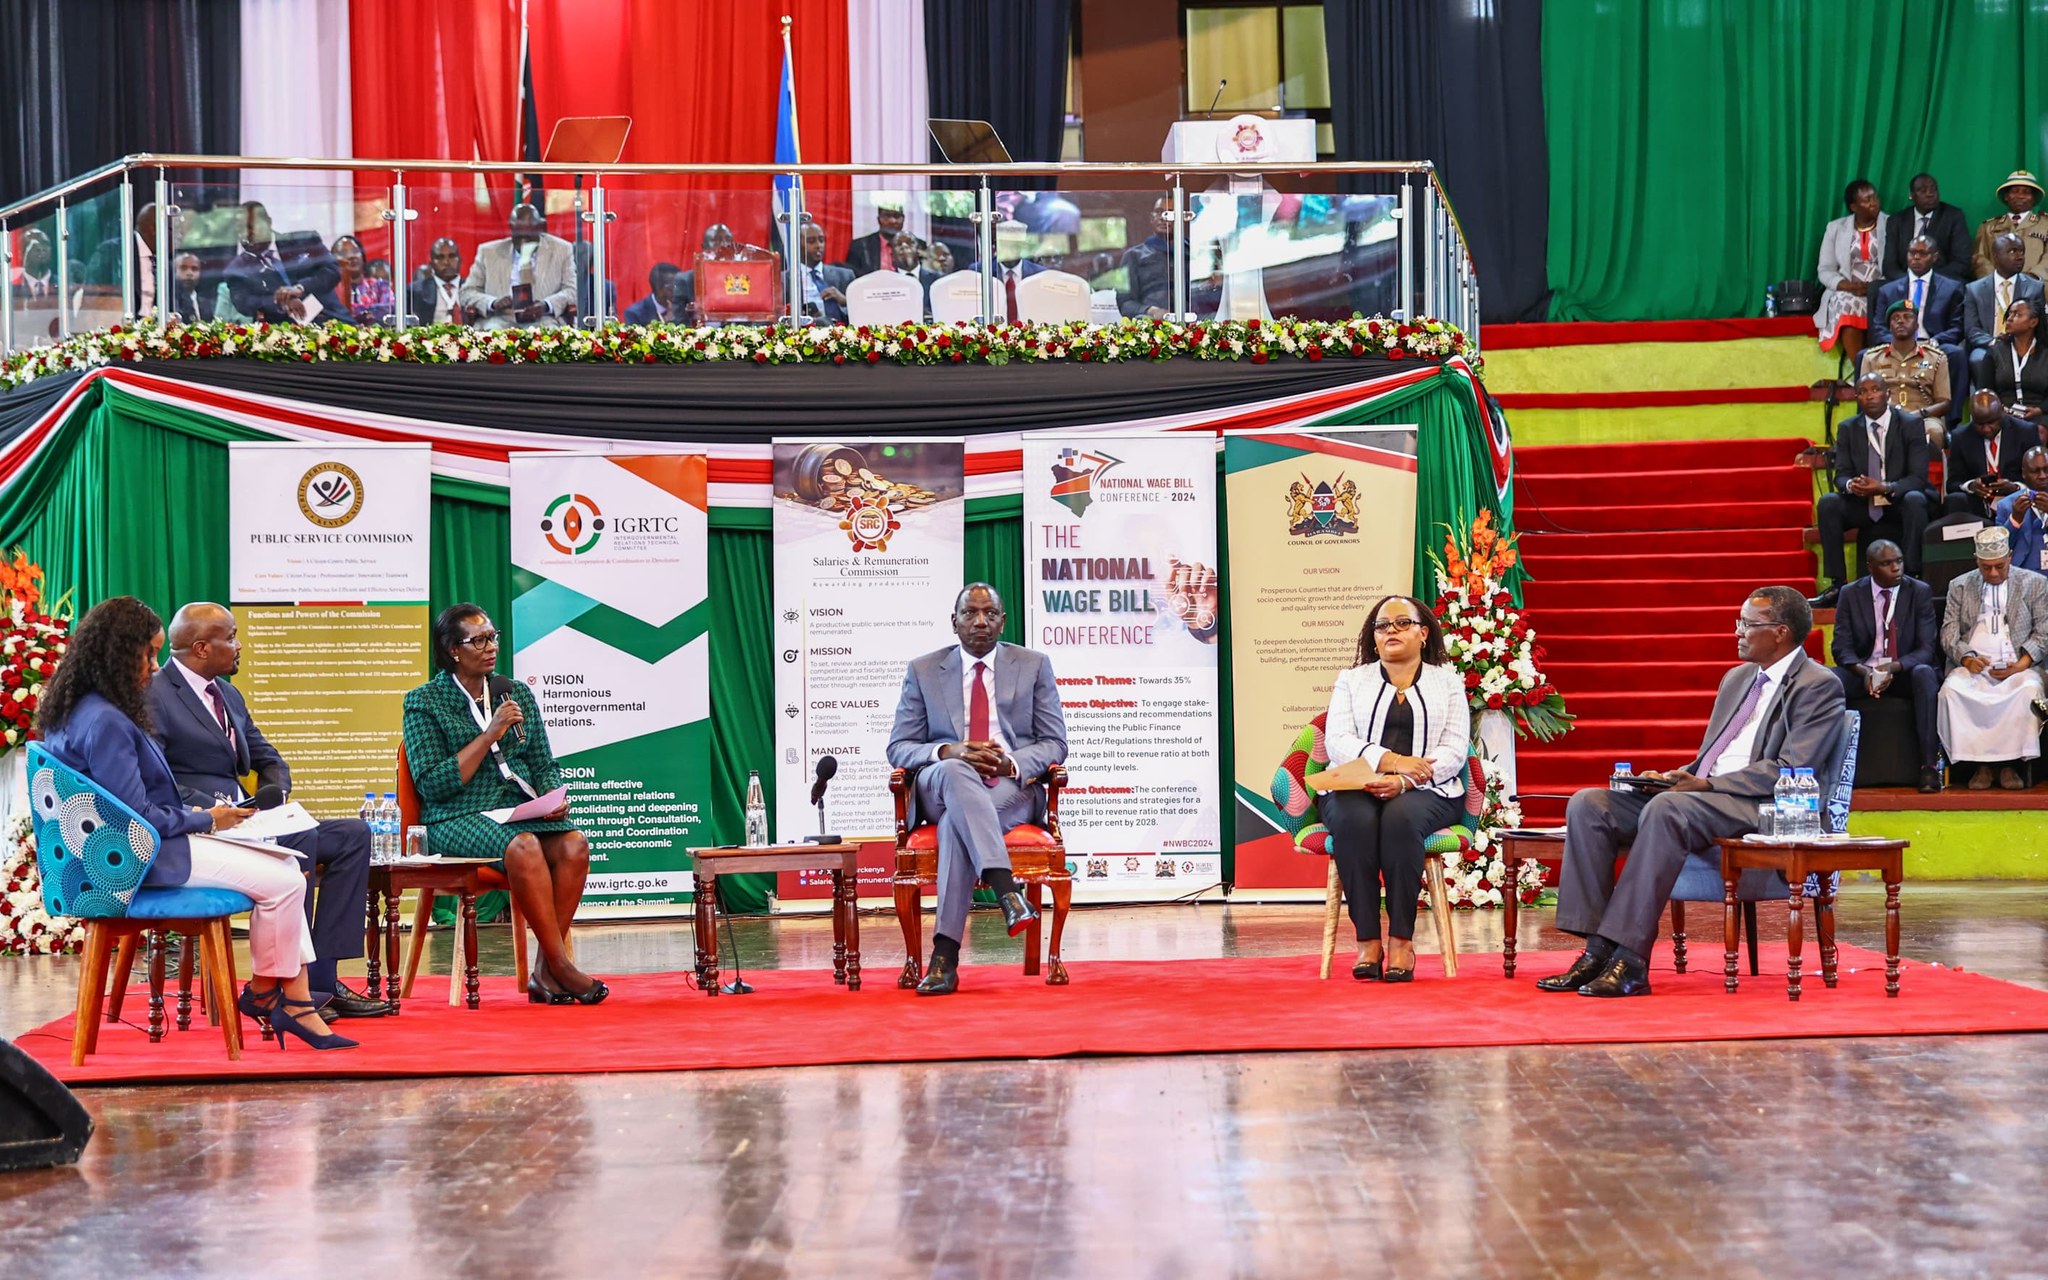 President Ruto and Governor Waiguru at the Third National Wage Bill Conference held at Bomas in Nairobi.